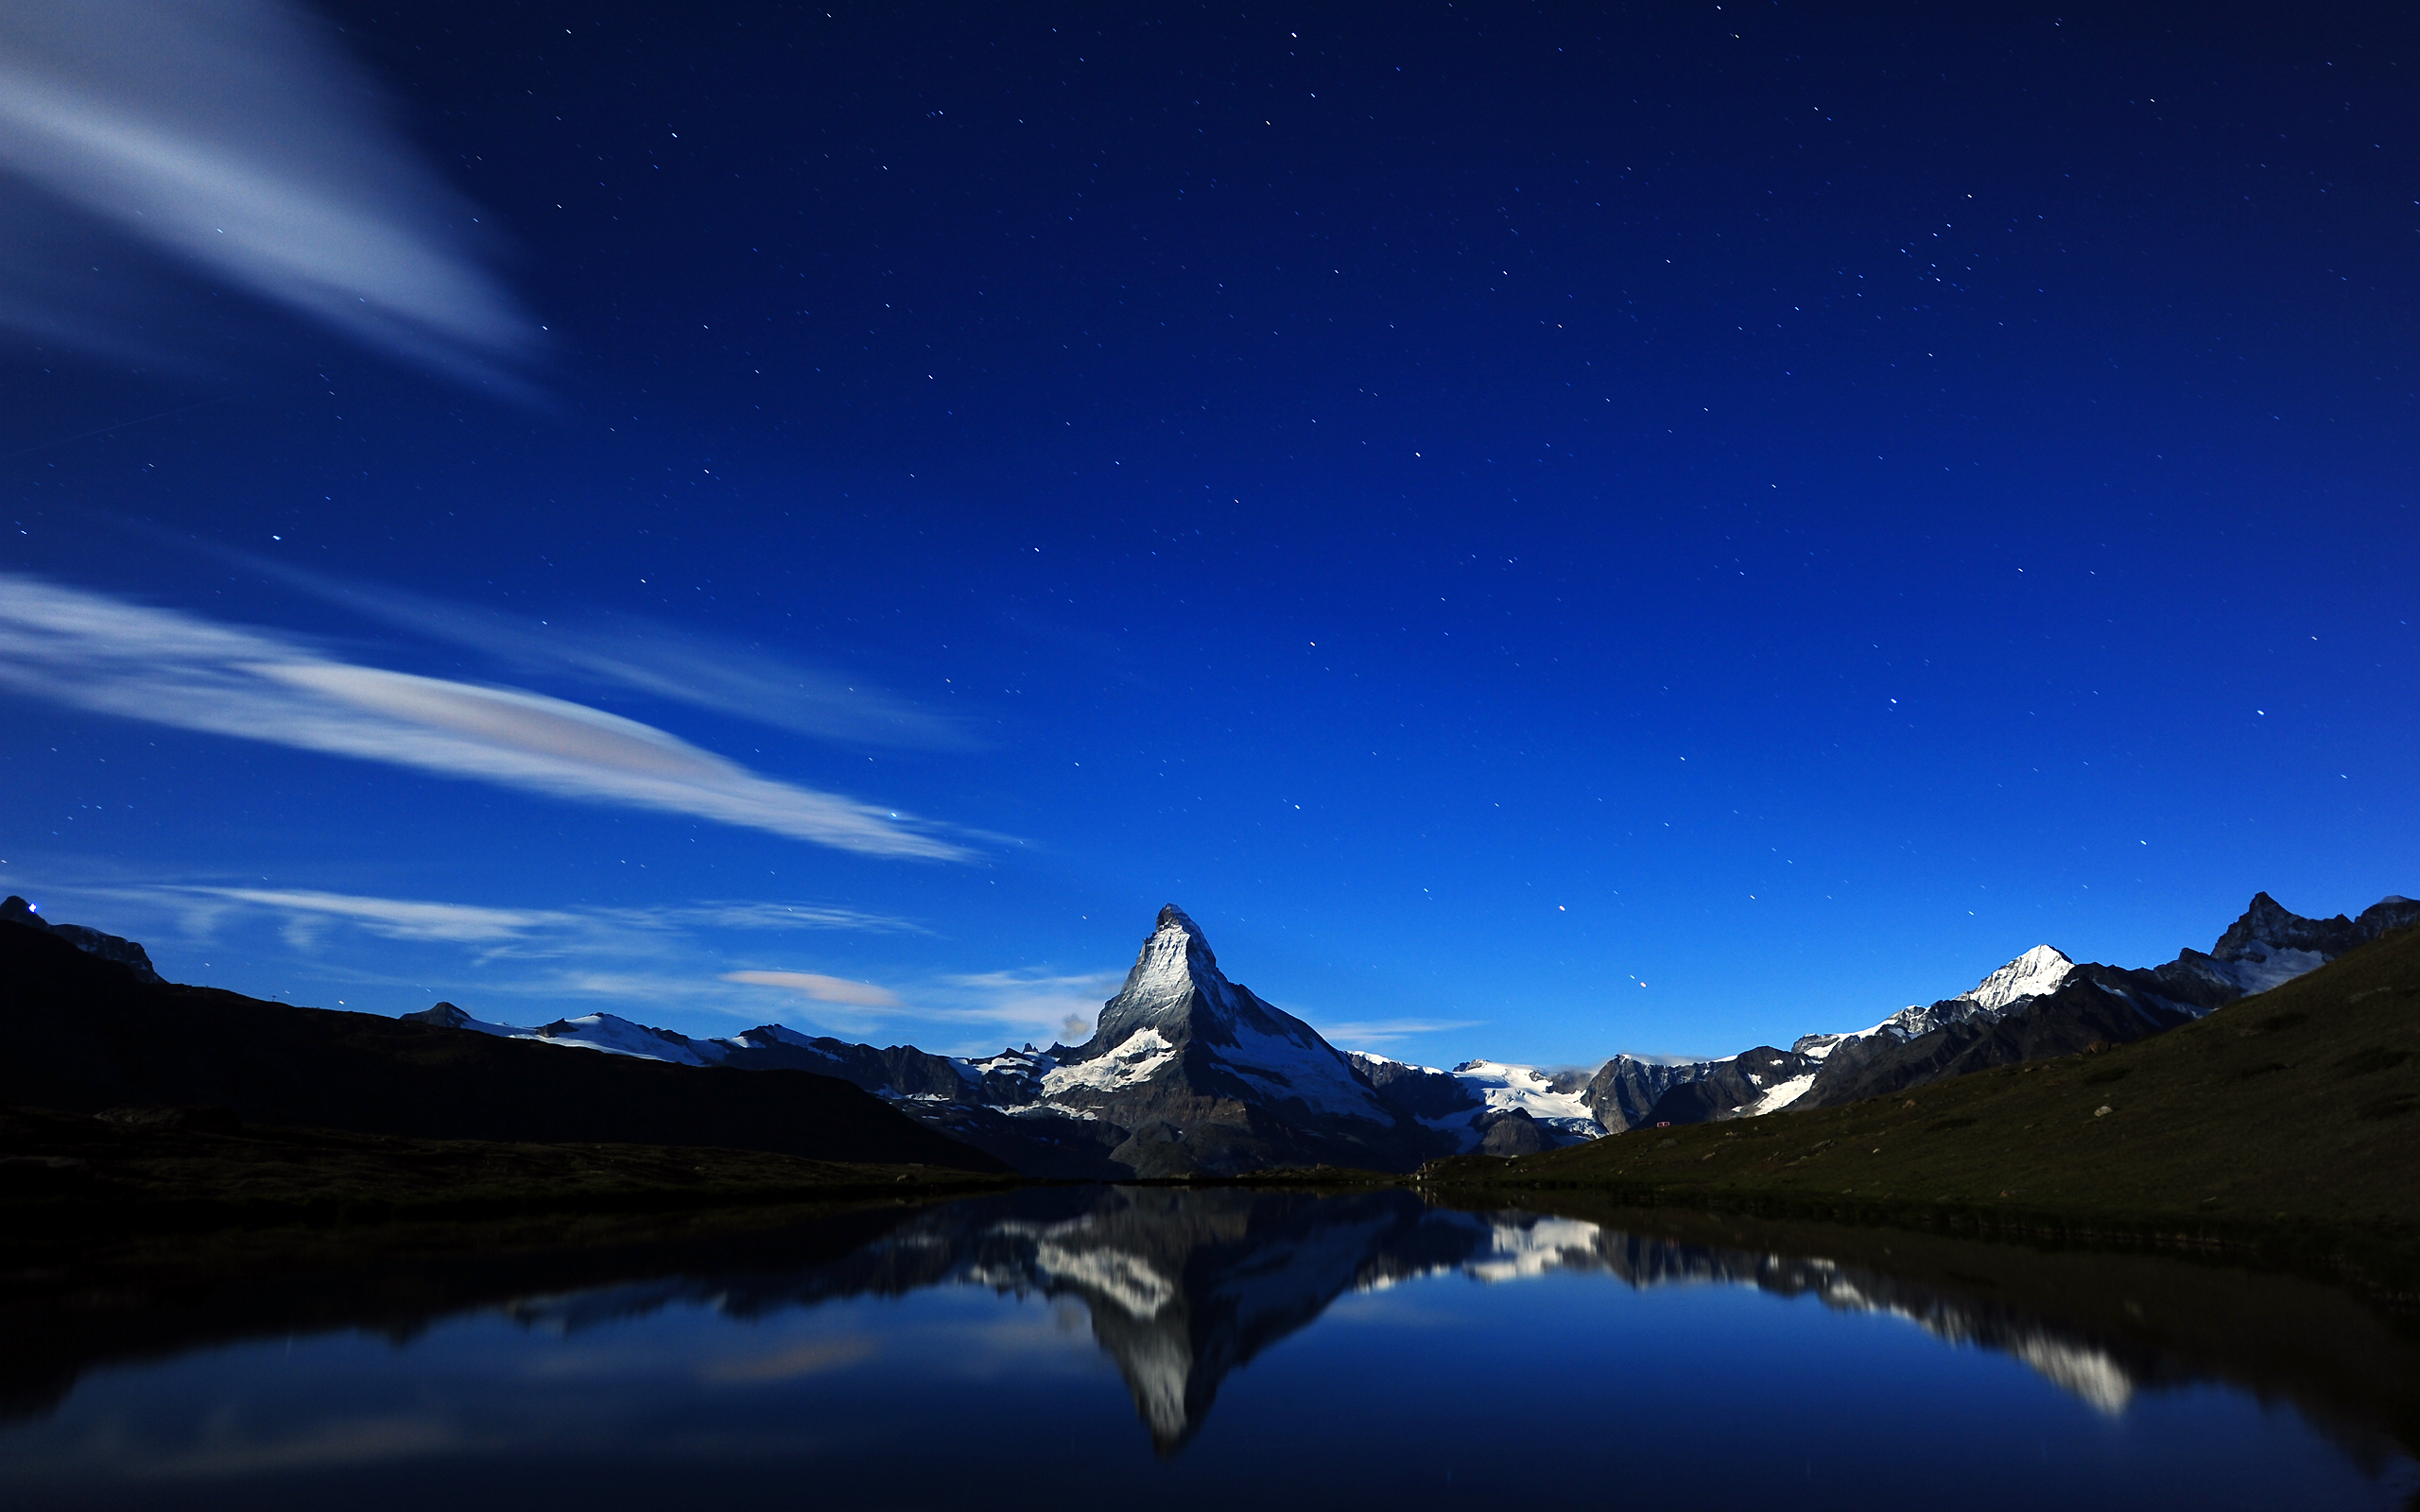 Matterhorns Midnight Reflection by Dominic Kamp